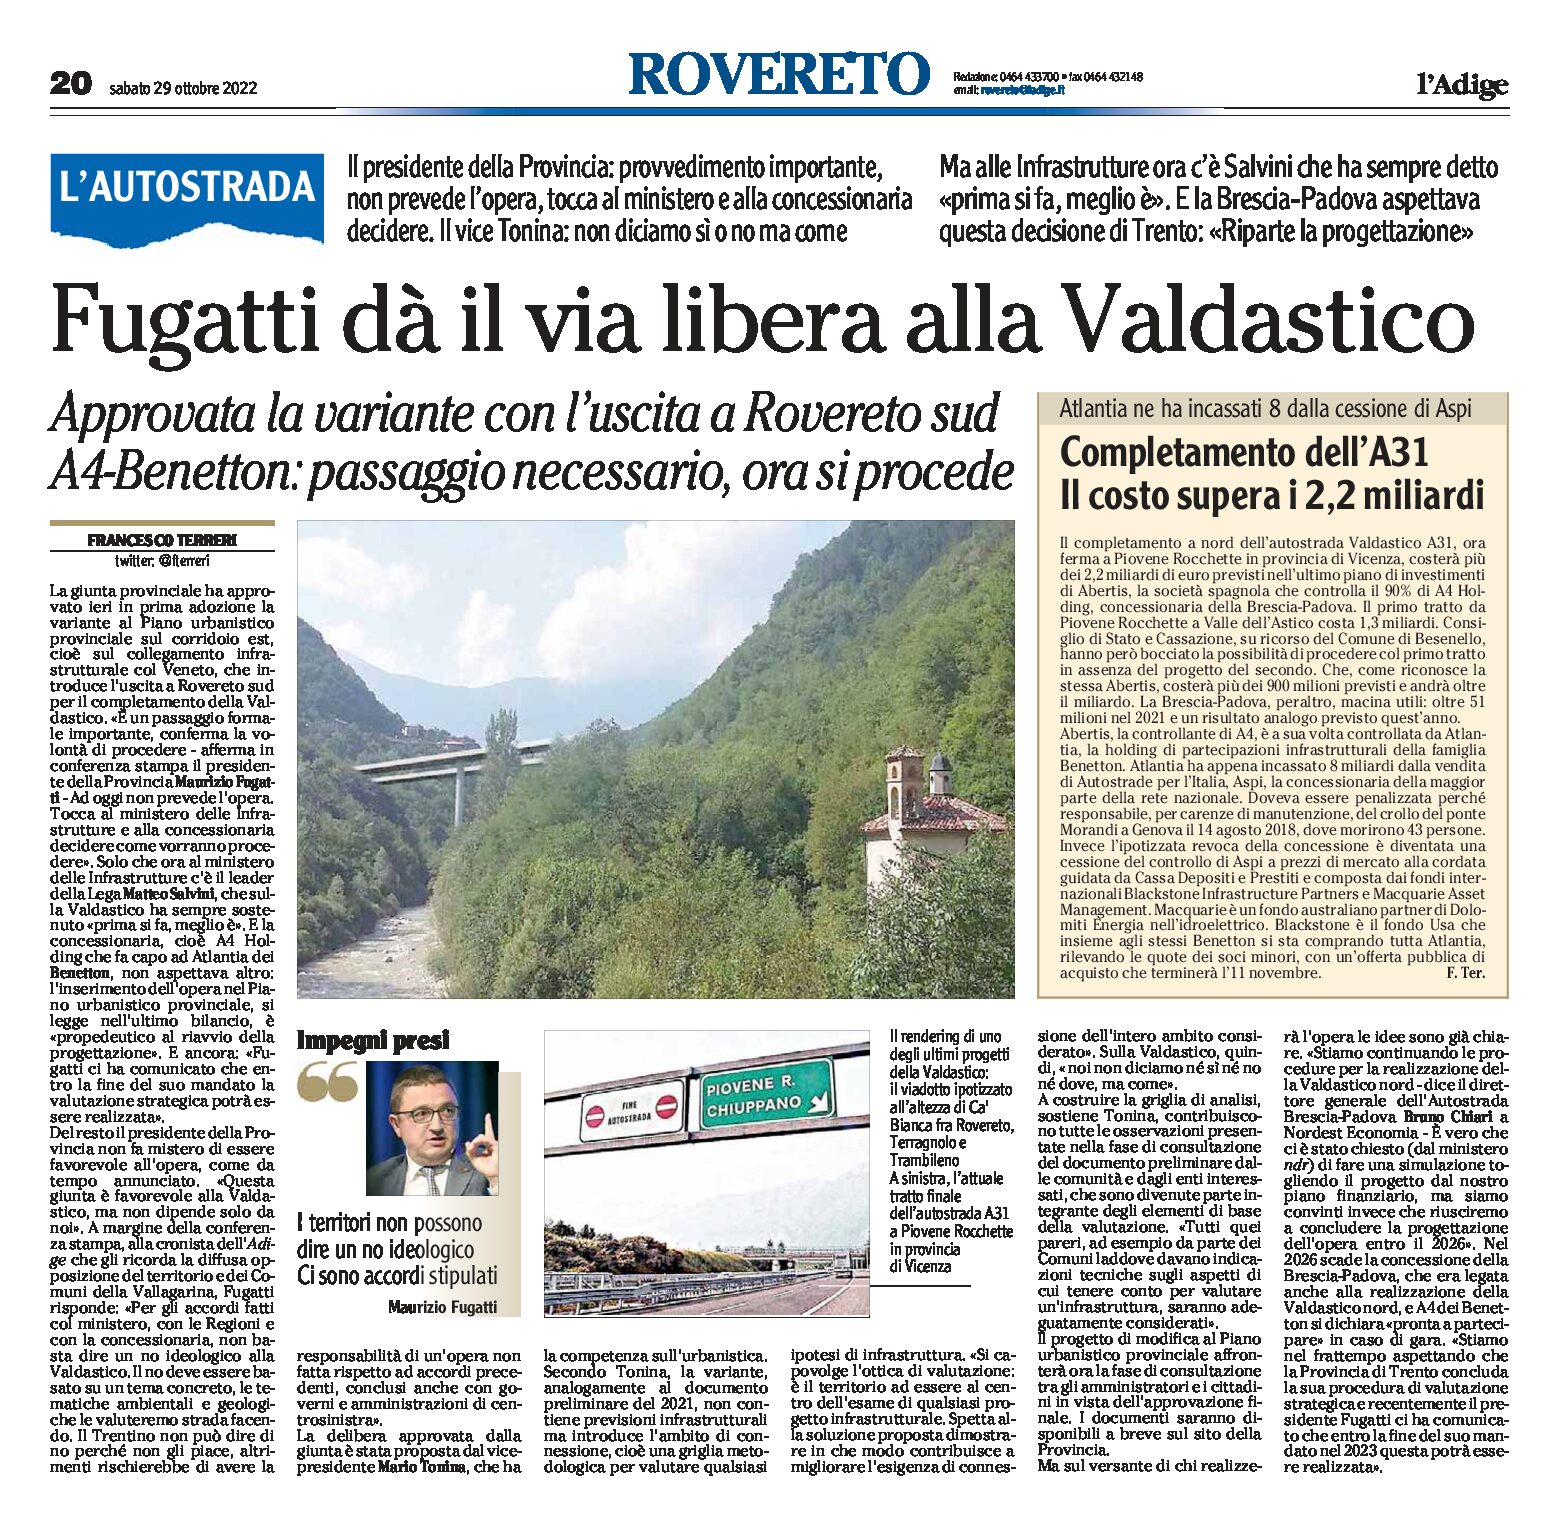 Valdastico: Fugatti dà il via libera, con uscita a Rovereto sud